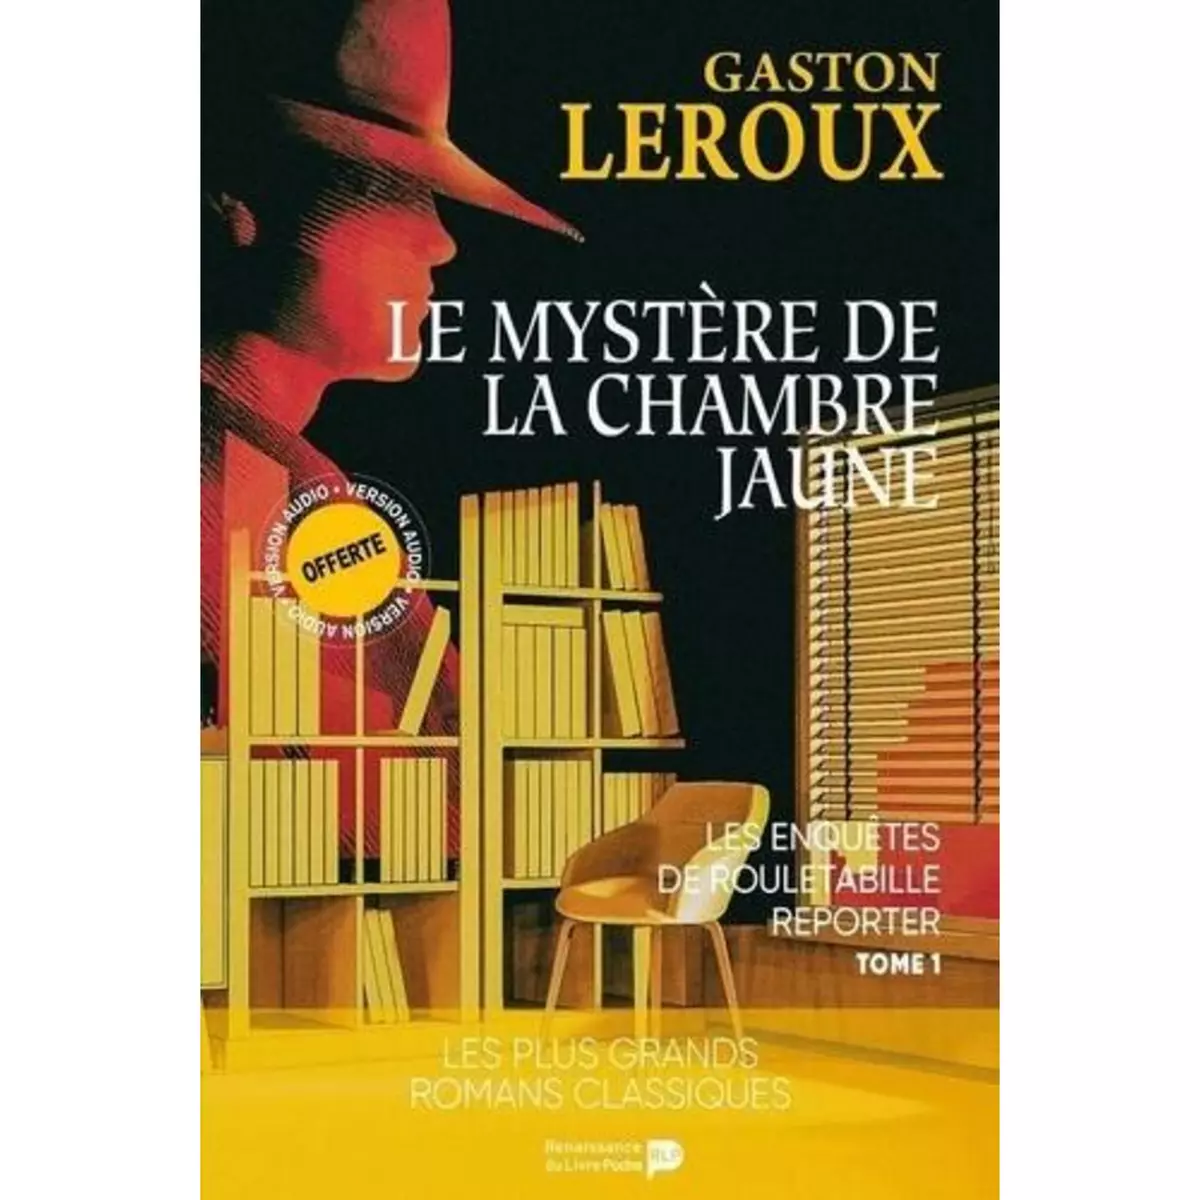  LES AVENTURES DE ROULETABILLE REPORTER TOME 1 : LE MYSTERE DE LA CHAMBRE JAUNE, Leroux Gaston